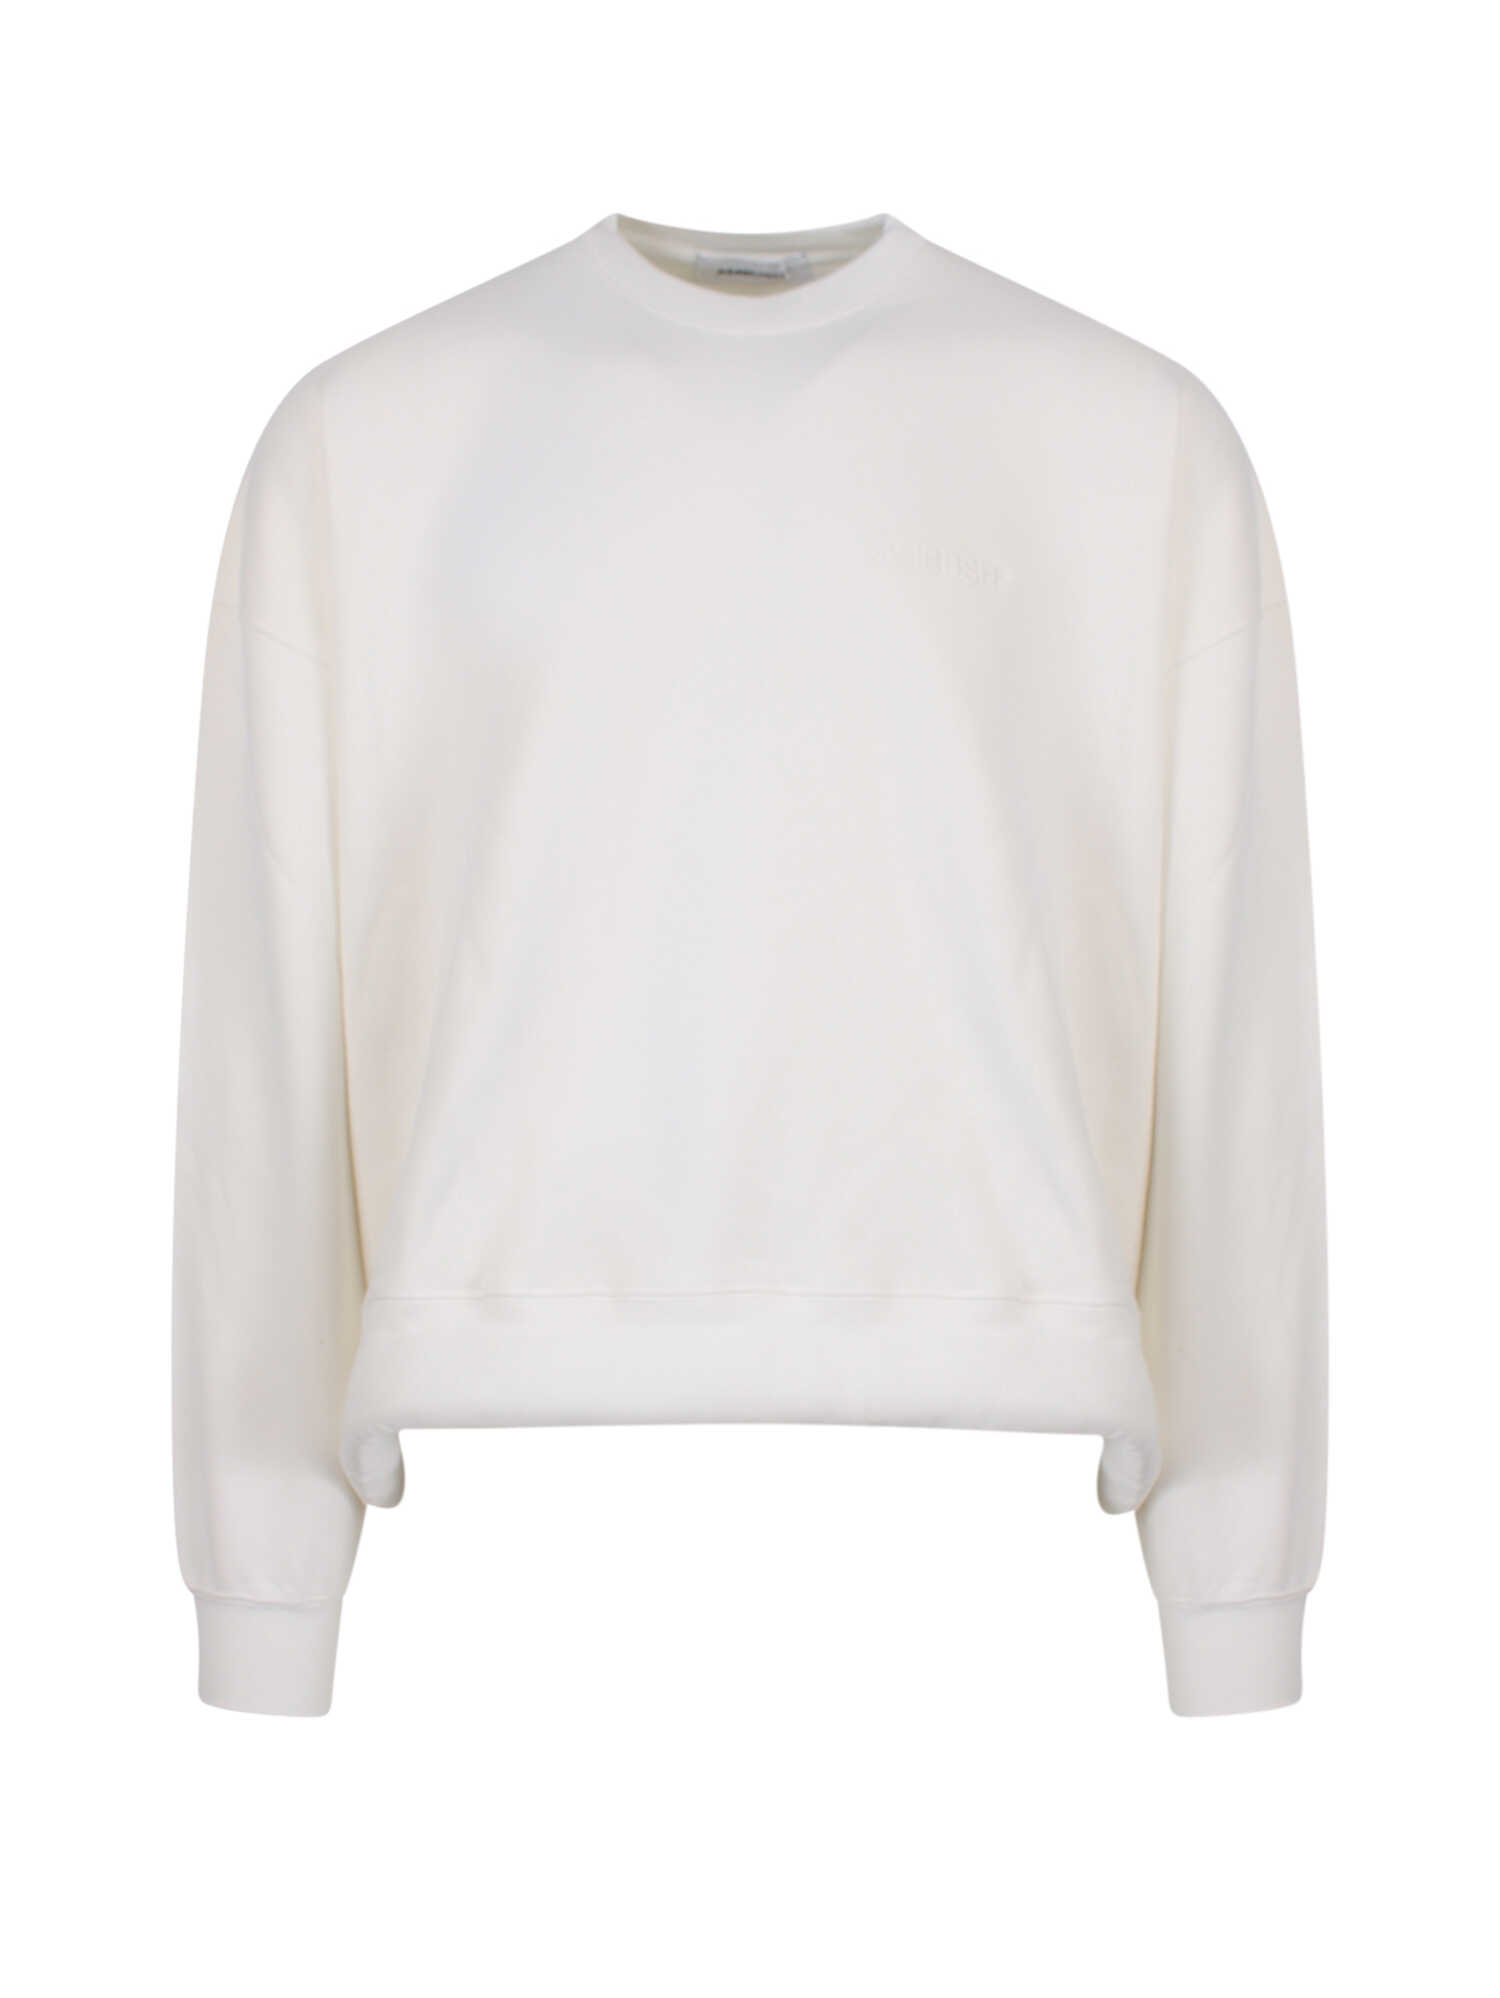 AMBUSH Sweatshirt White image0